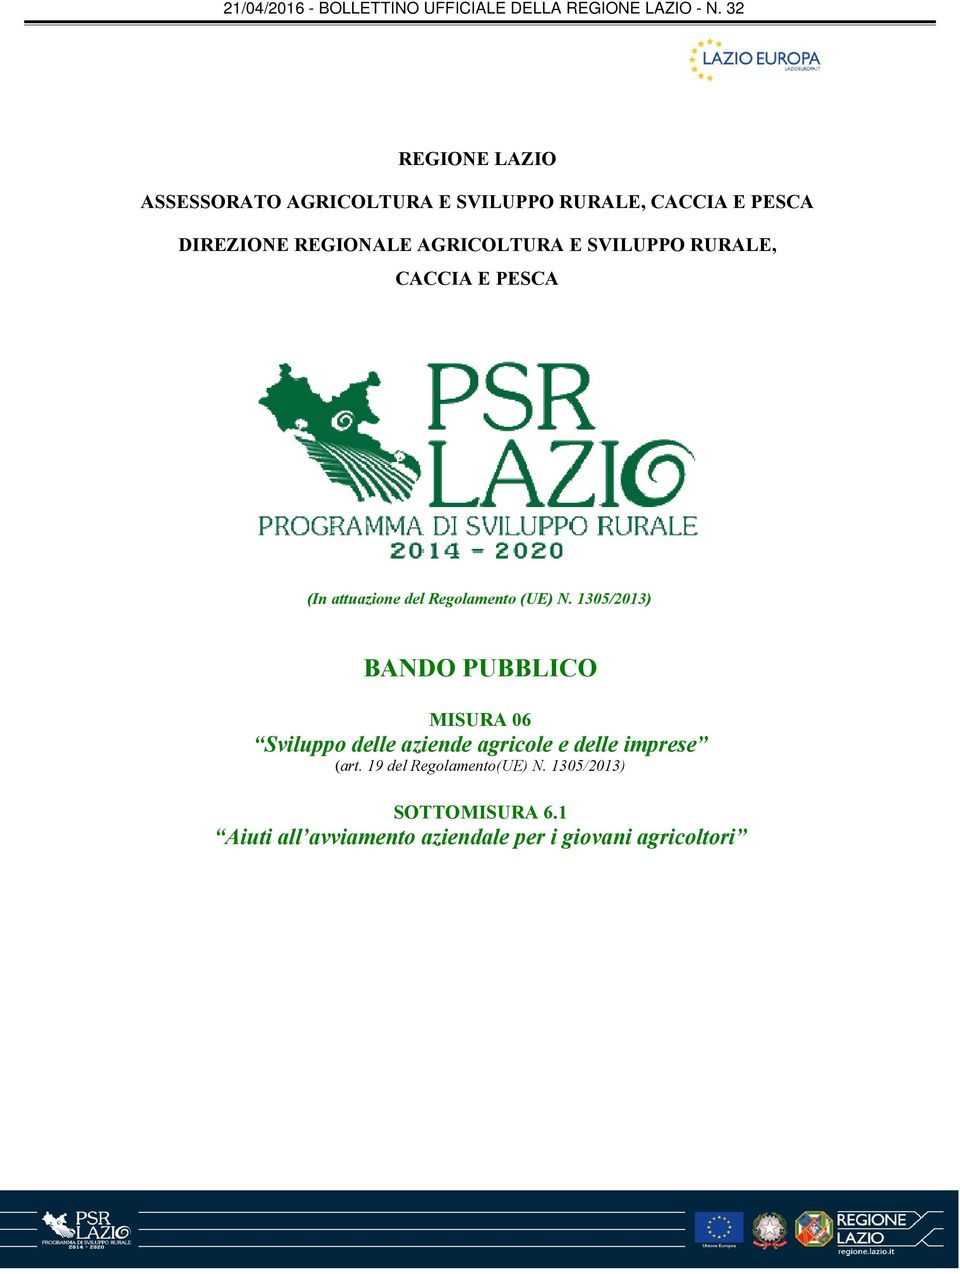 1305/2013) BANDO PUBBLICO MISURA 06 Sviluppo delle aziende agricole e delle imprese (art.